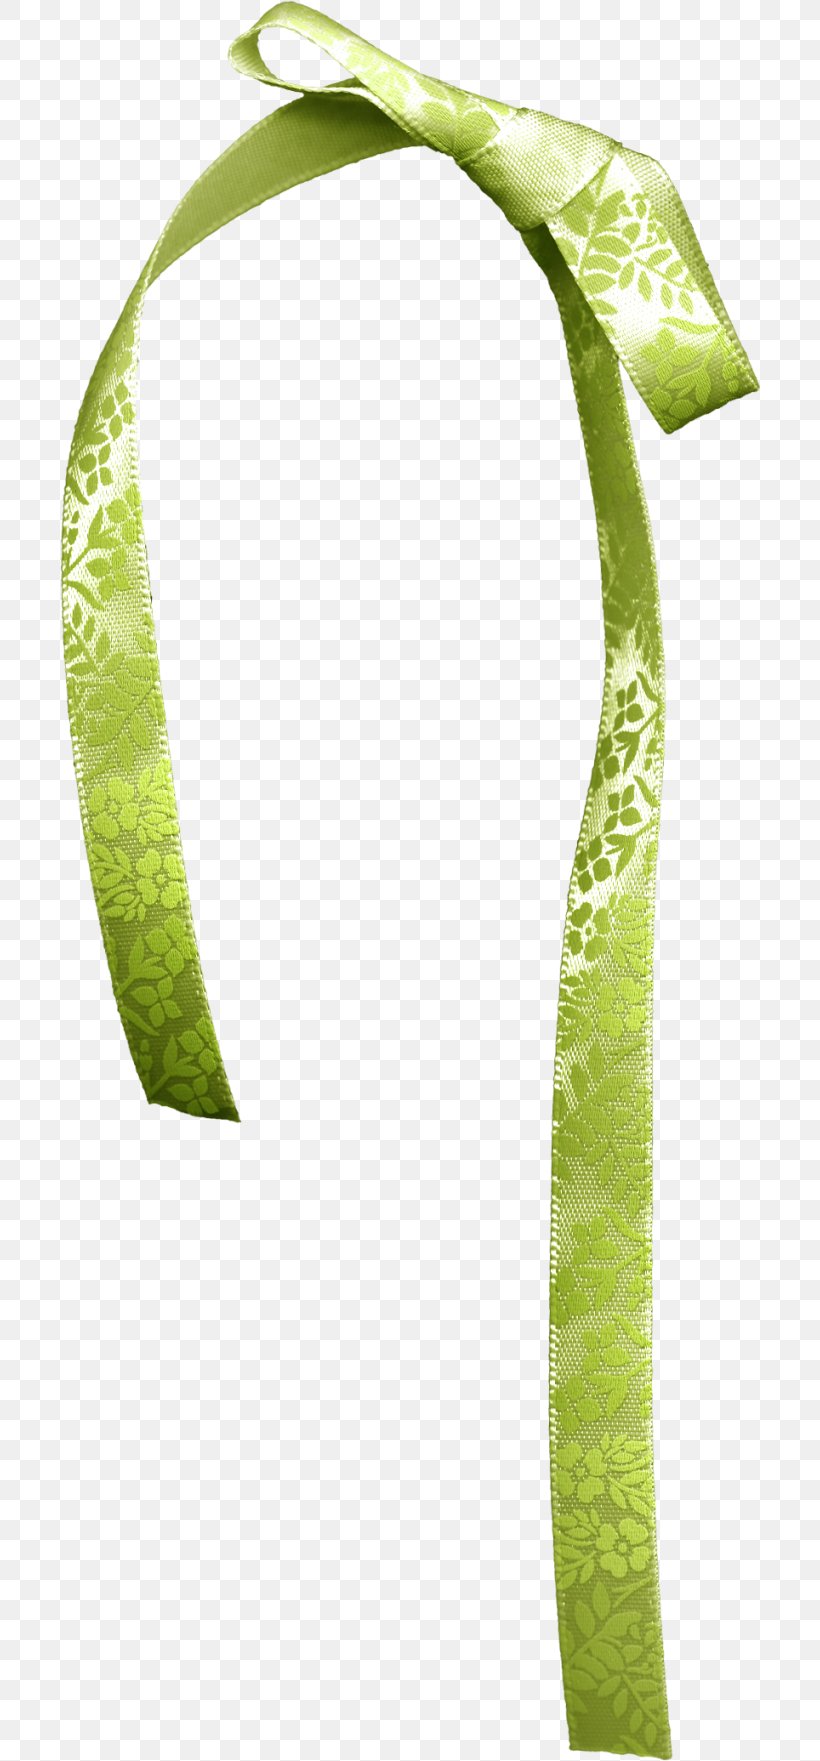 Ribbon Textile Paper Clip Art, PNG, 700x1761px, Ribbon, Chiffon, Grass, Green, Lace Download Free